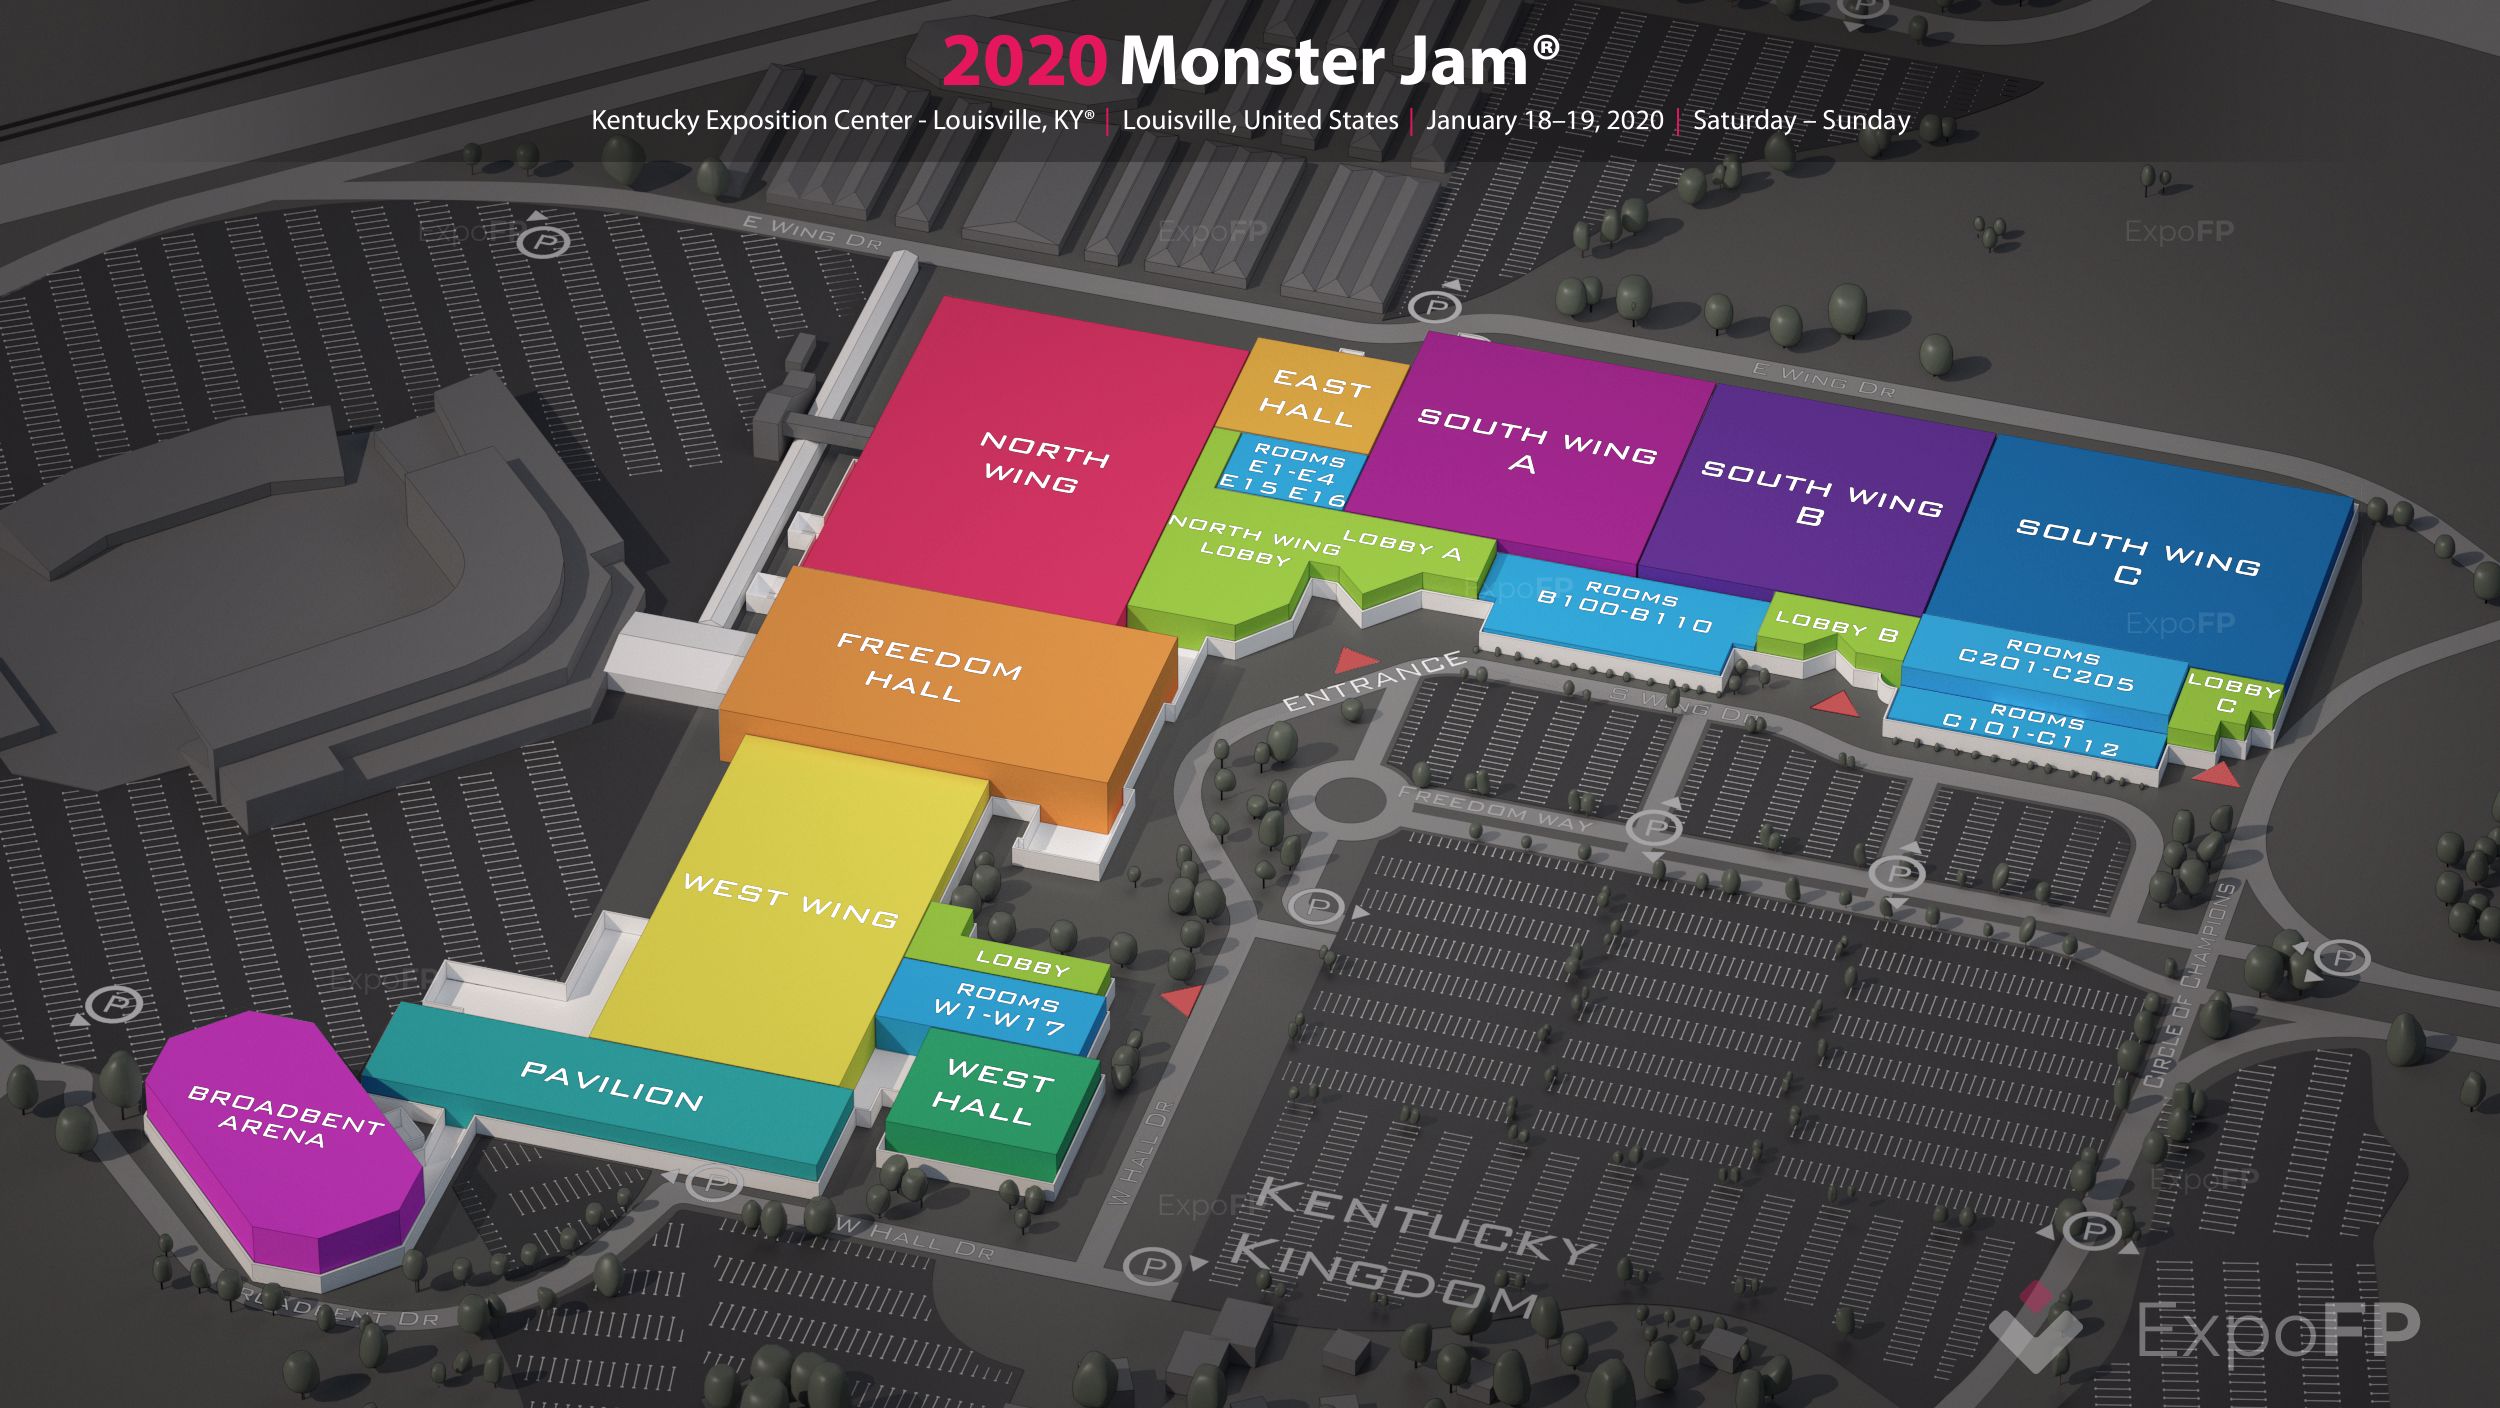 Monster Jam 2020 in Kentucky Exposition Center